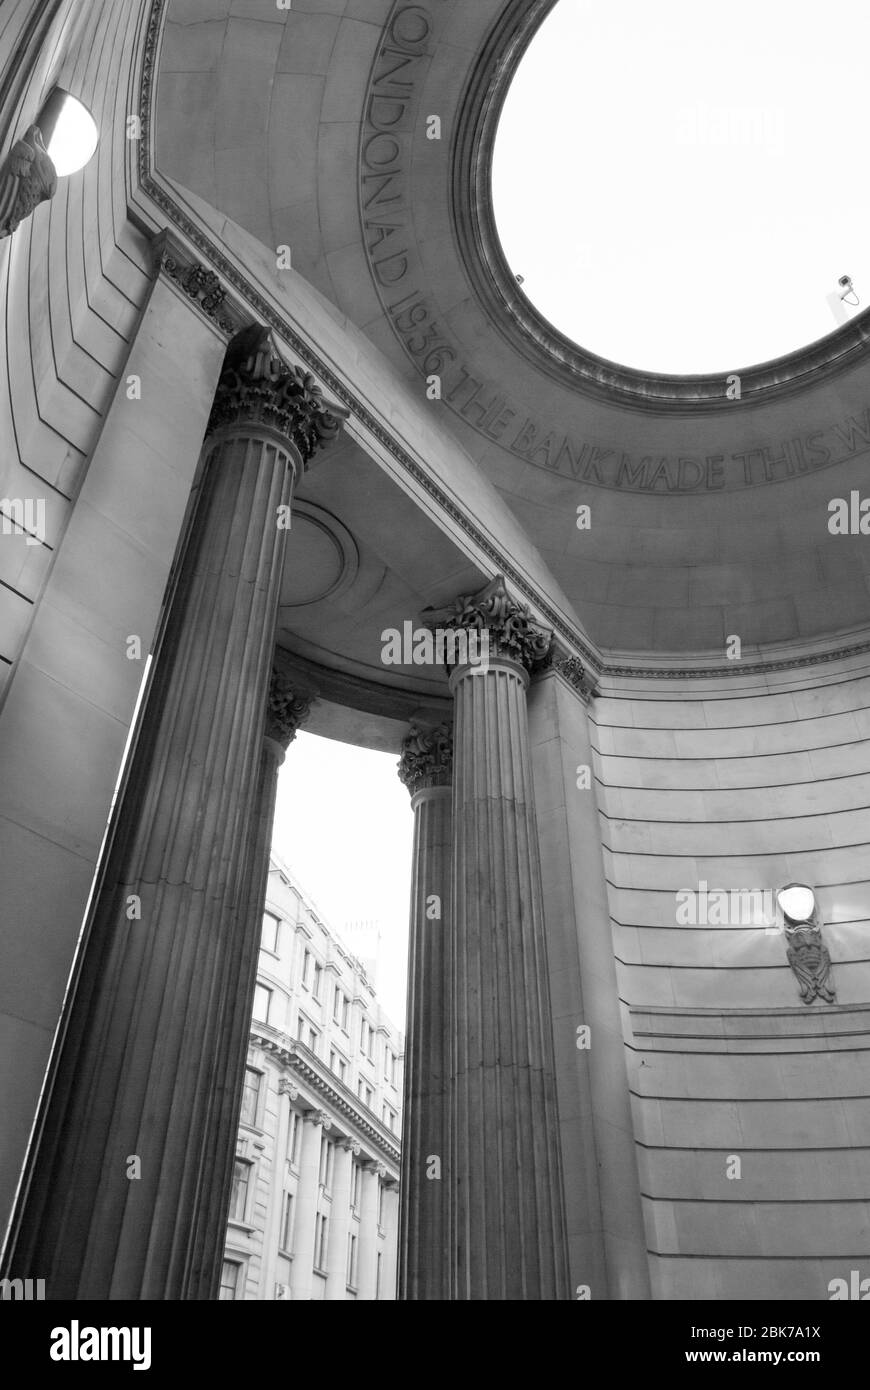 Architecture classique néoclassique Portico Corinthian Columns Bank of England, Threadneedle Street, Londres, EC2R 8AH par Sir John Soane B&W. Banque D'Images